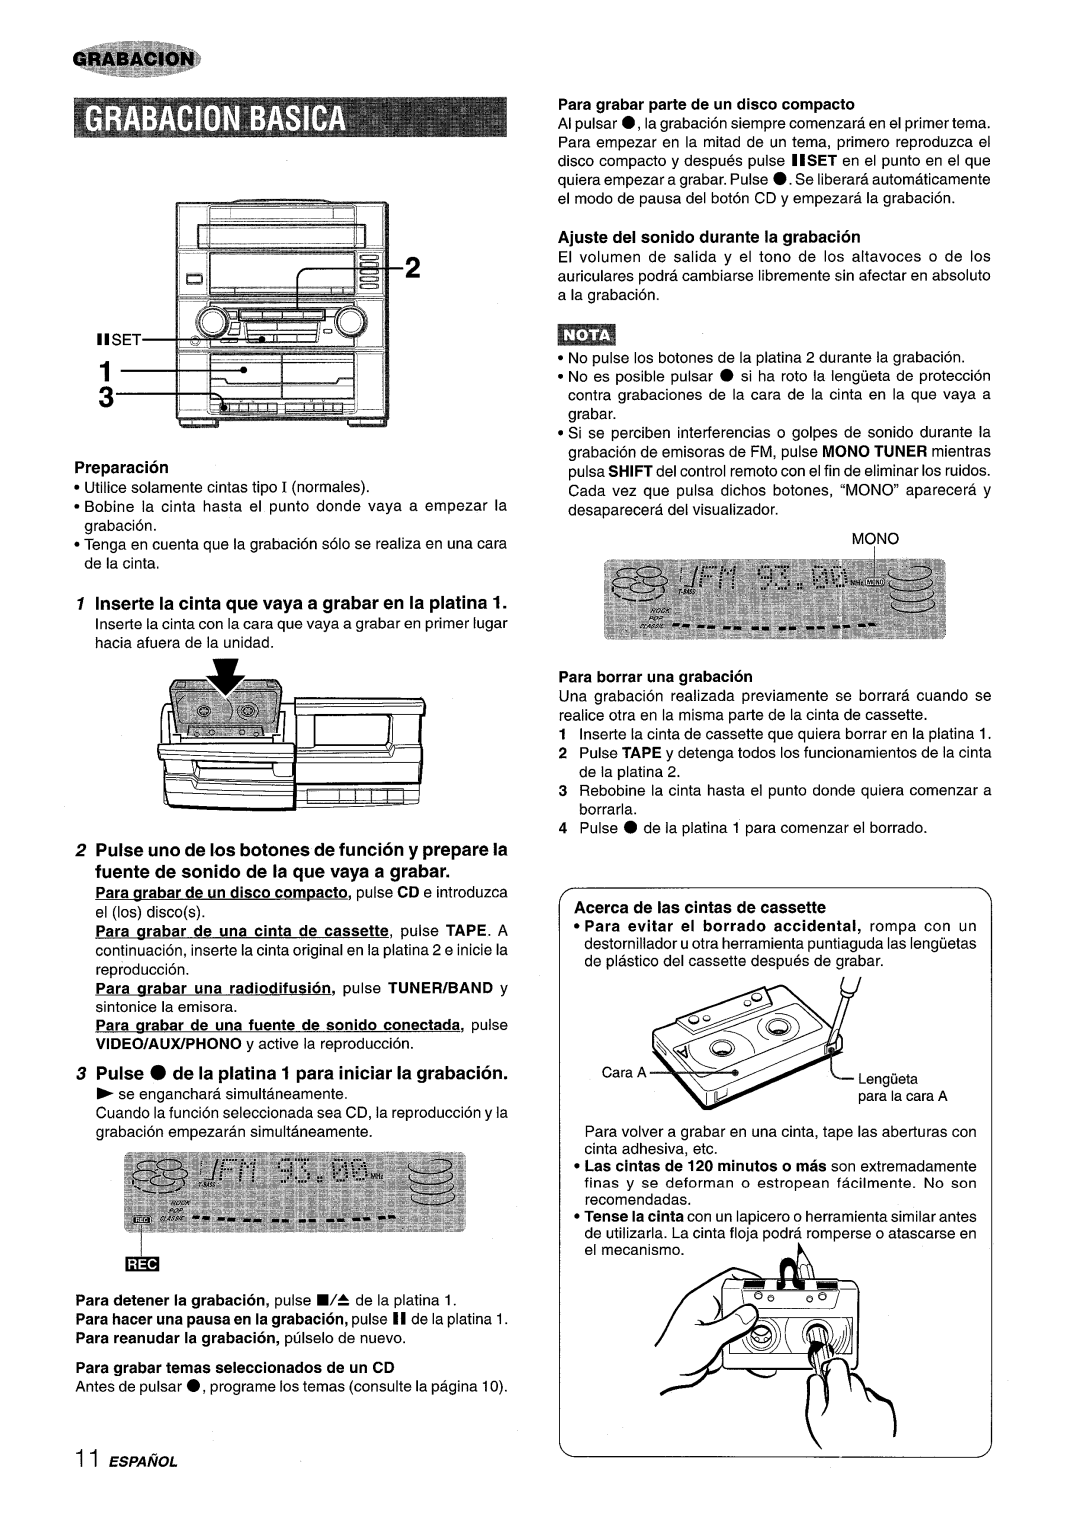 Aiwa Z-R555 manual Inserte la cinta que vaya a grabar en la platina, Pulse uno de Ios botones de funcion y prepare la 